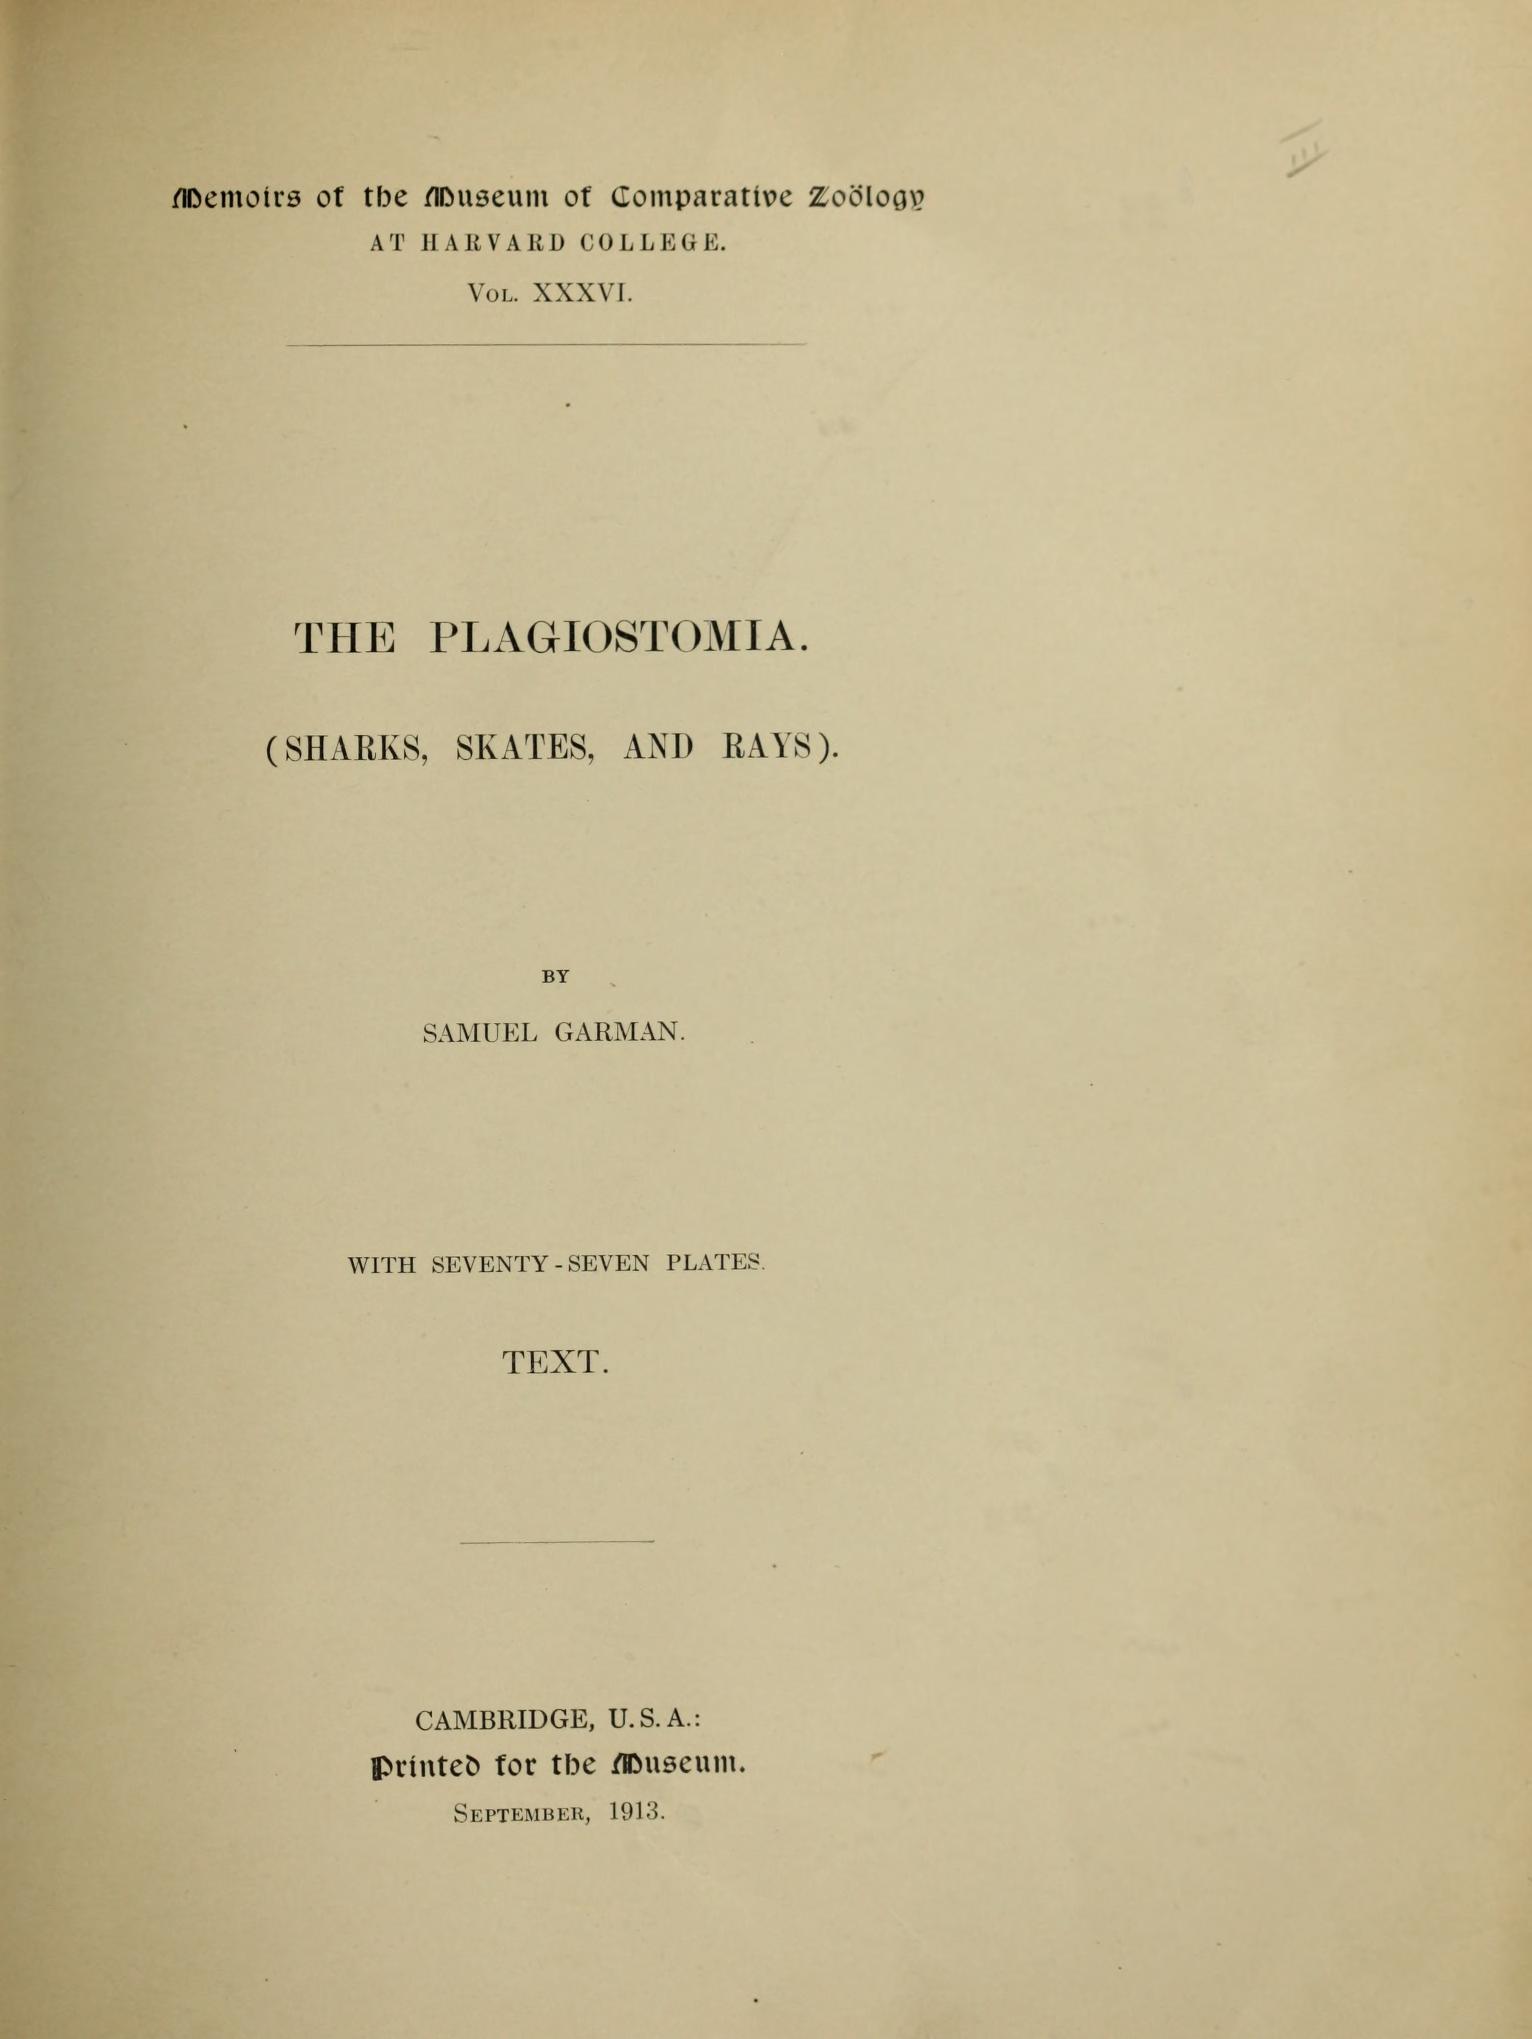 Media of type text, Garman 1913. Description:MCZ Memoirs Vol. XXXVI [Text]